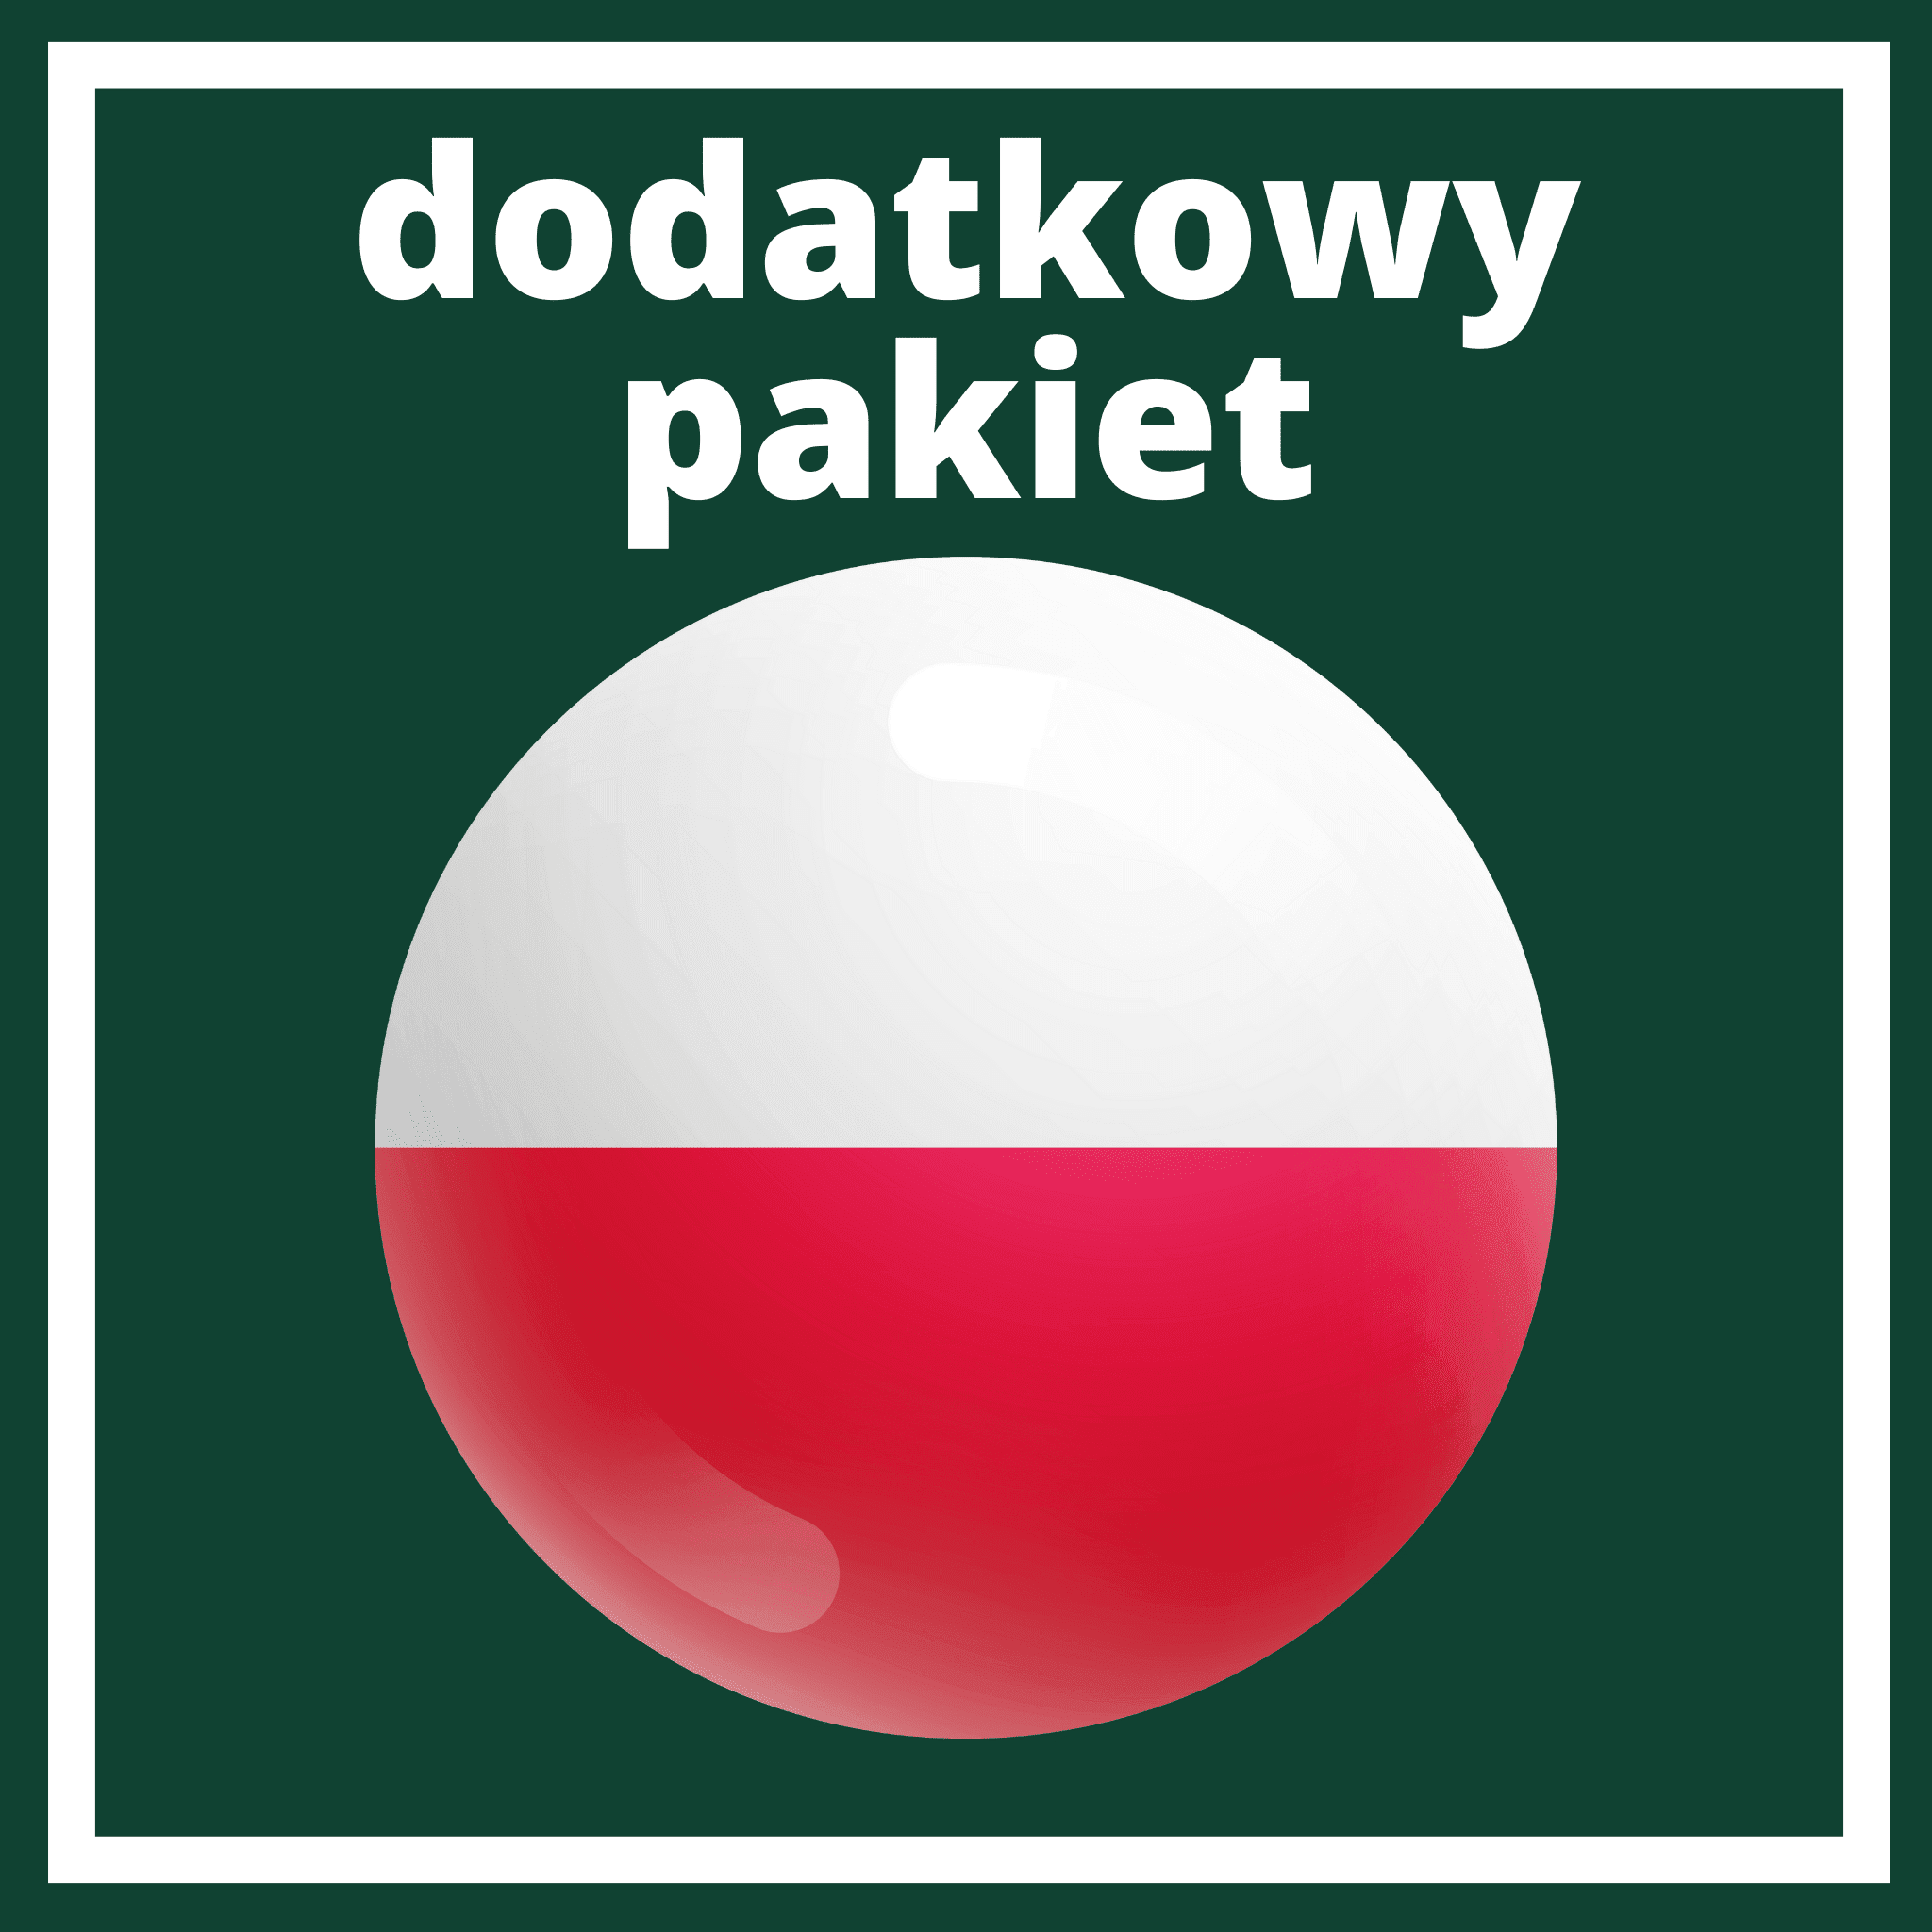 Aanvullend pakket Polen